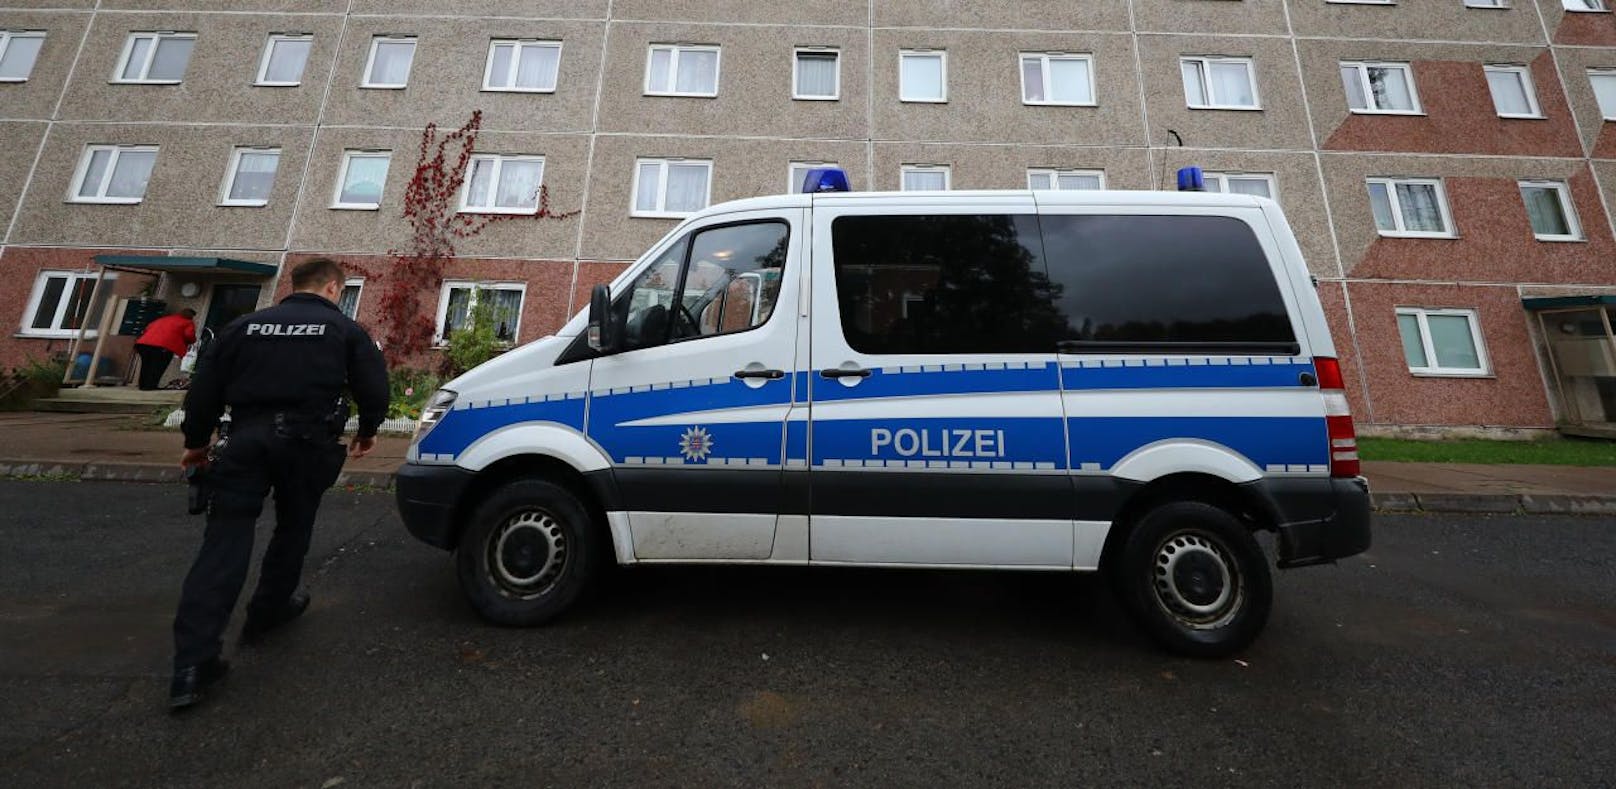 Die deutsche Polizei ermittelt auf Hochtouren.